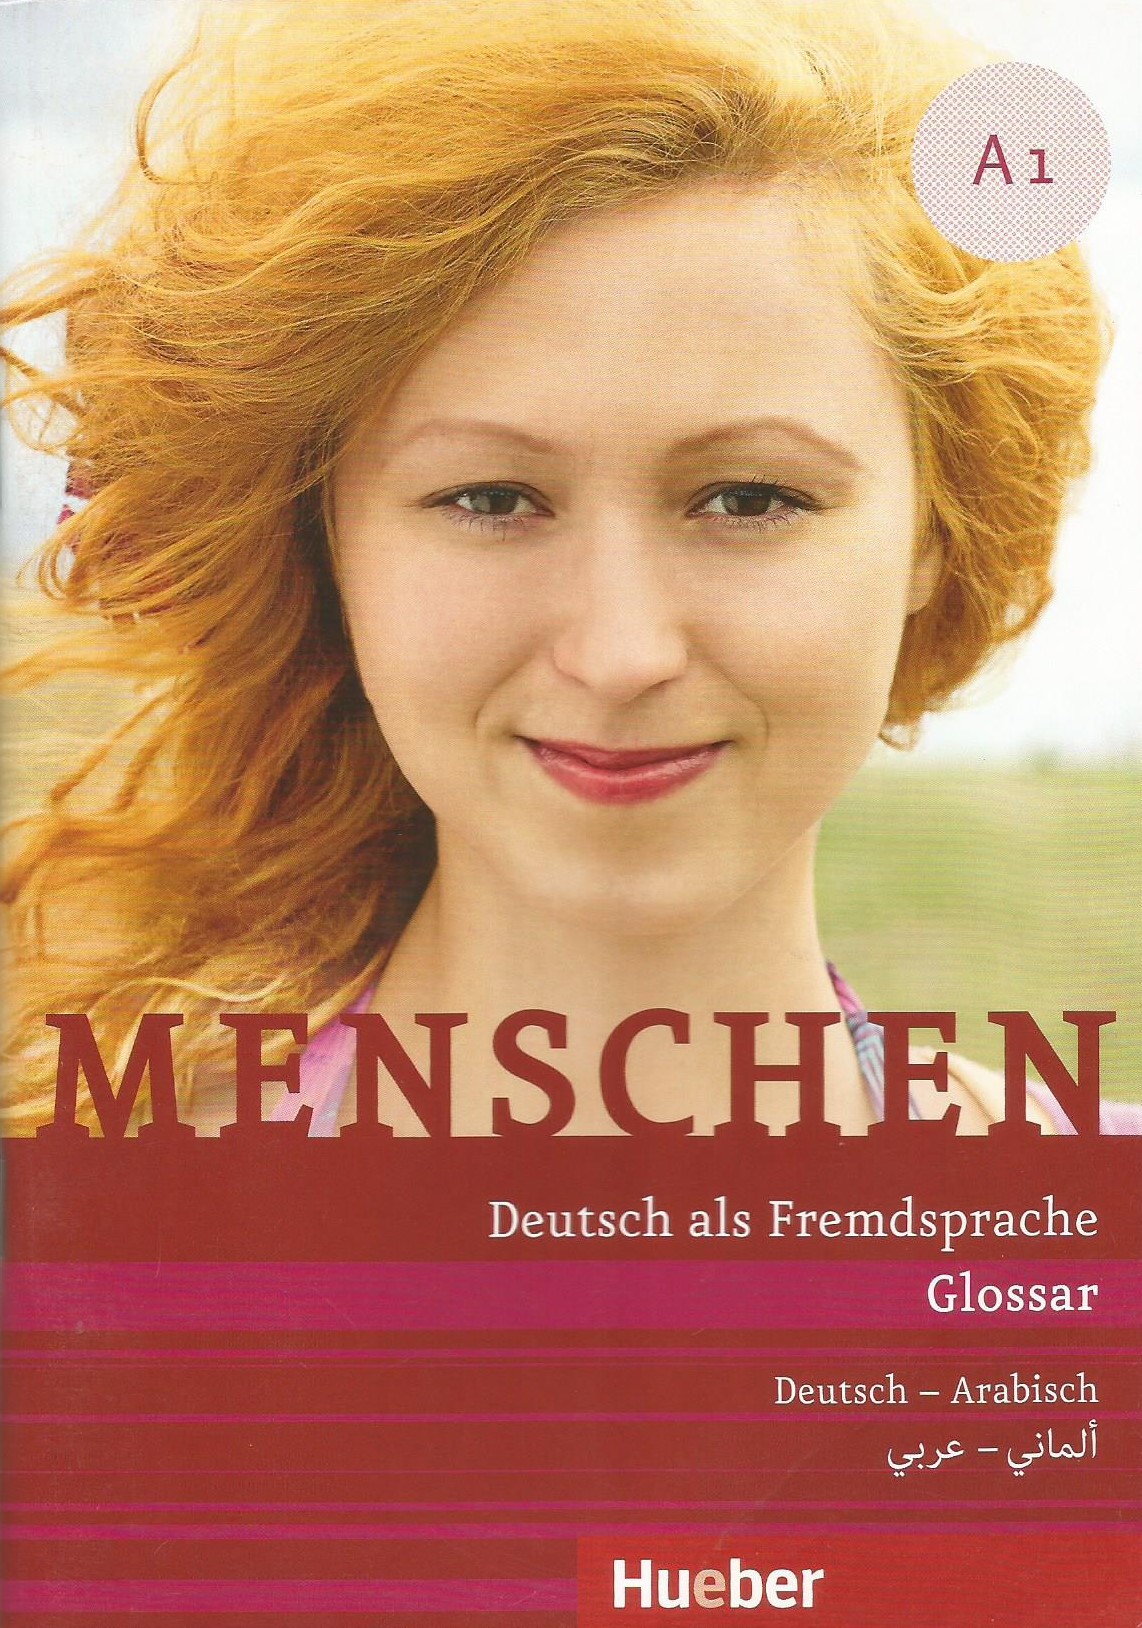 menschen A1 Glossar ألماني - عربي